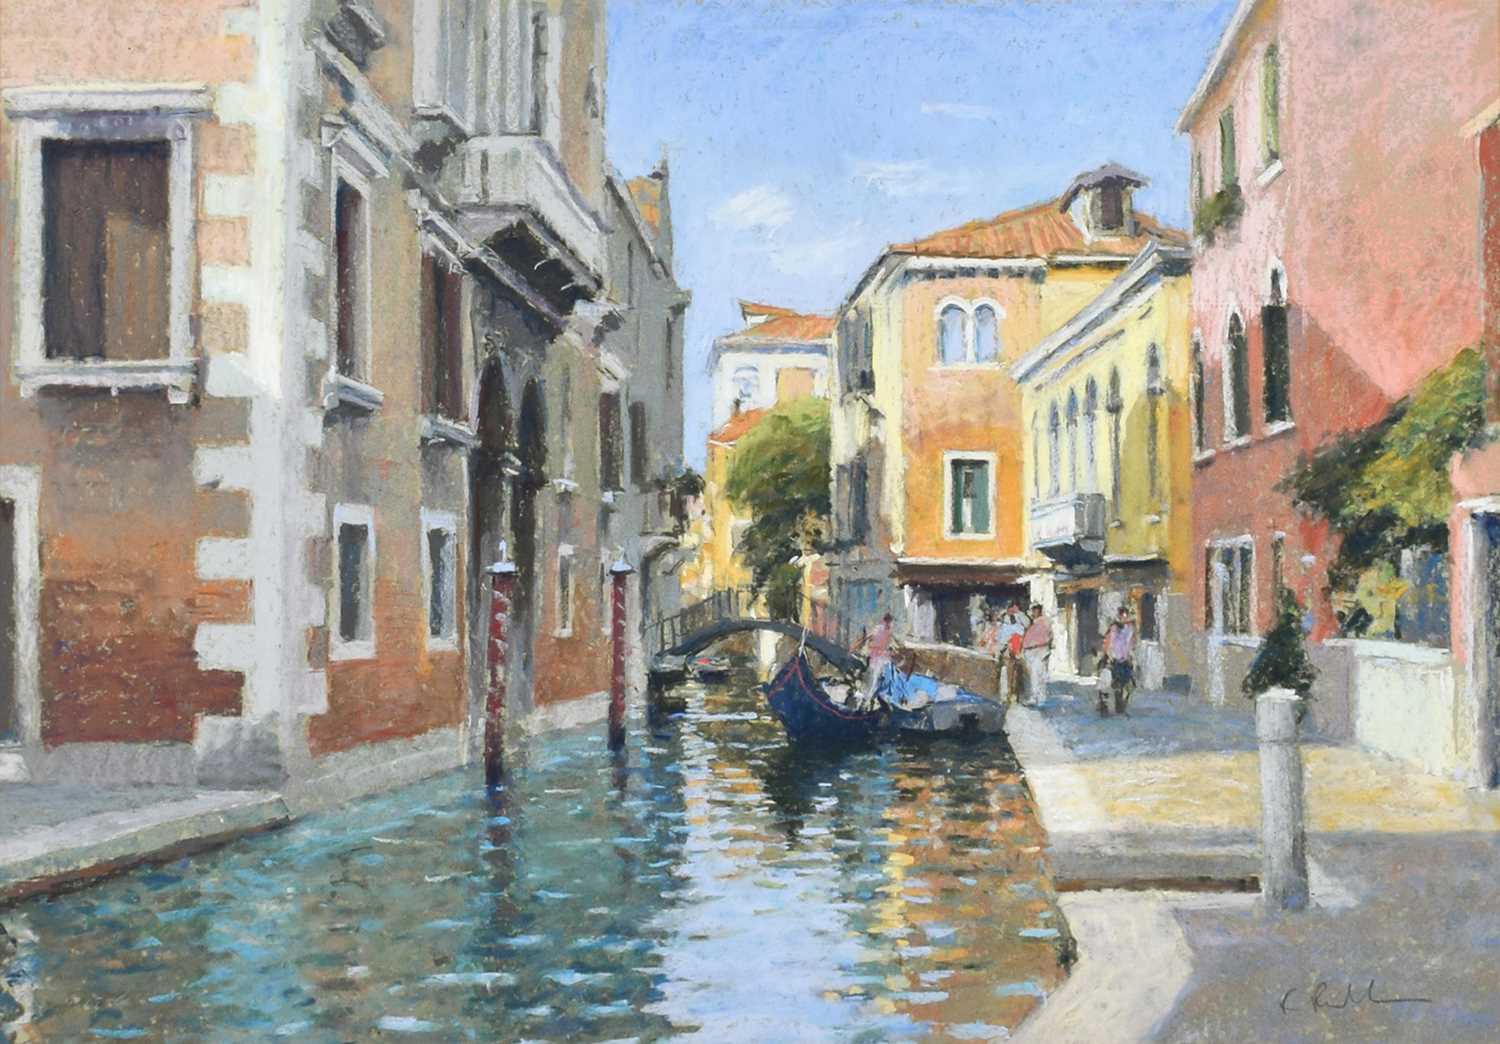 Bob Richardson (British 1938-) "Rio San Barnaba, Venice"